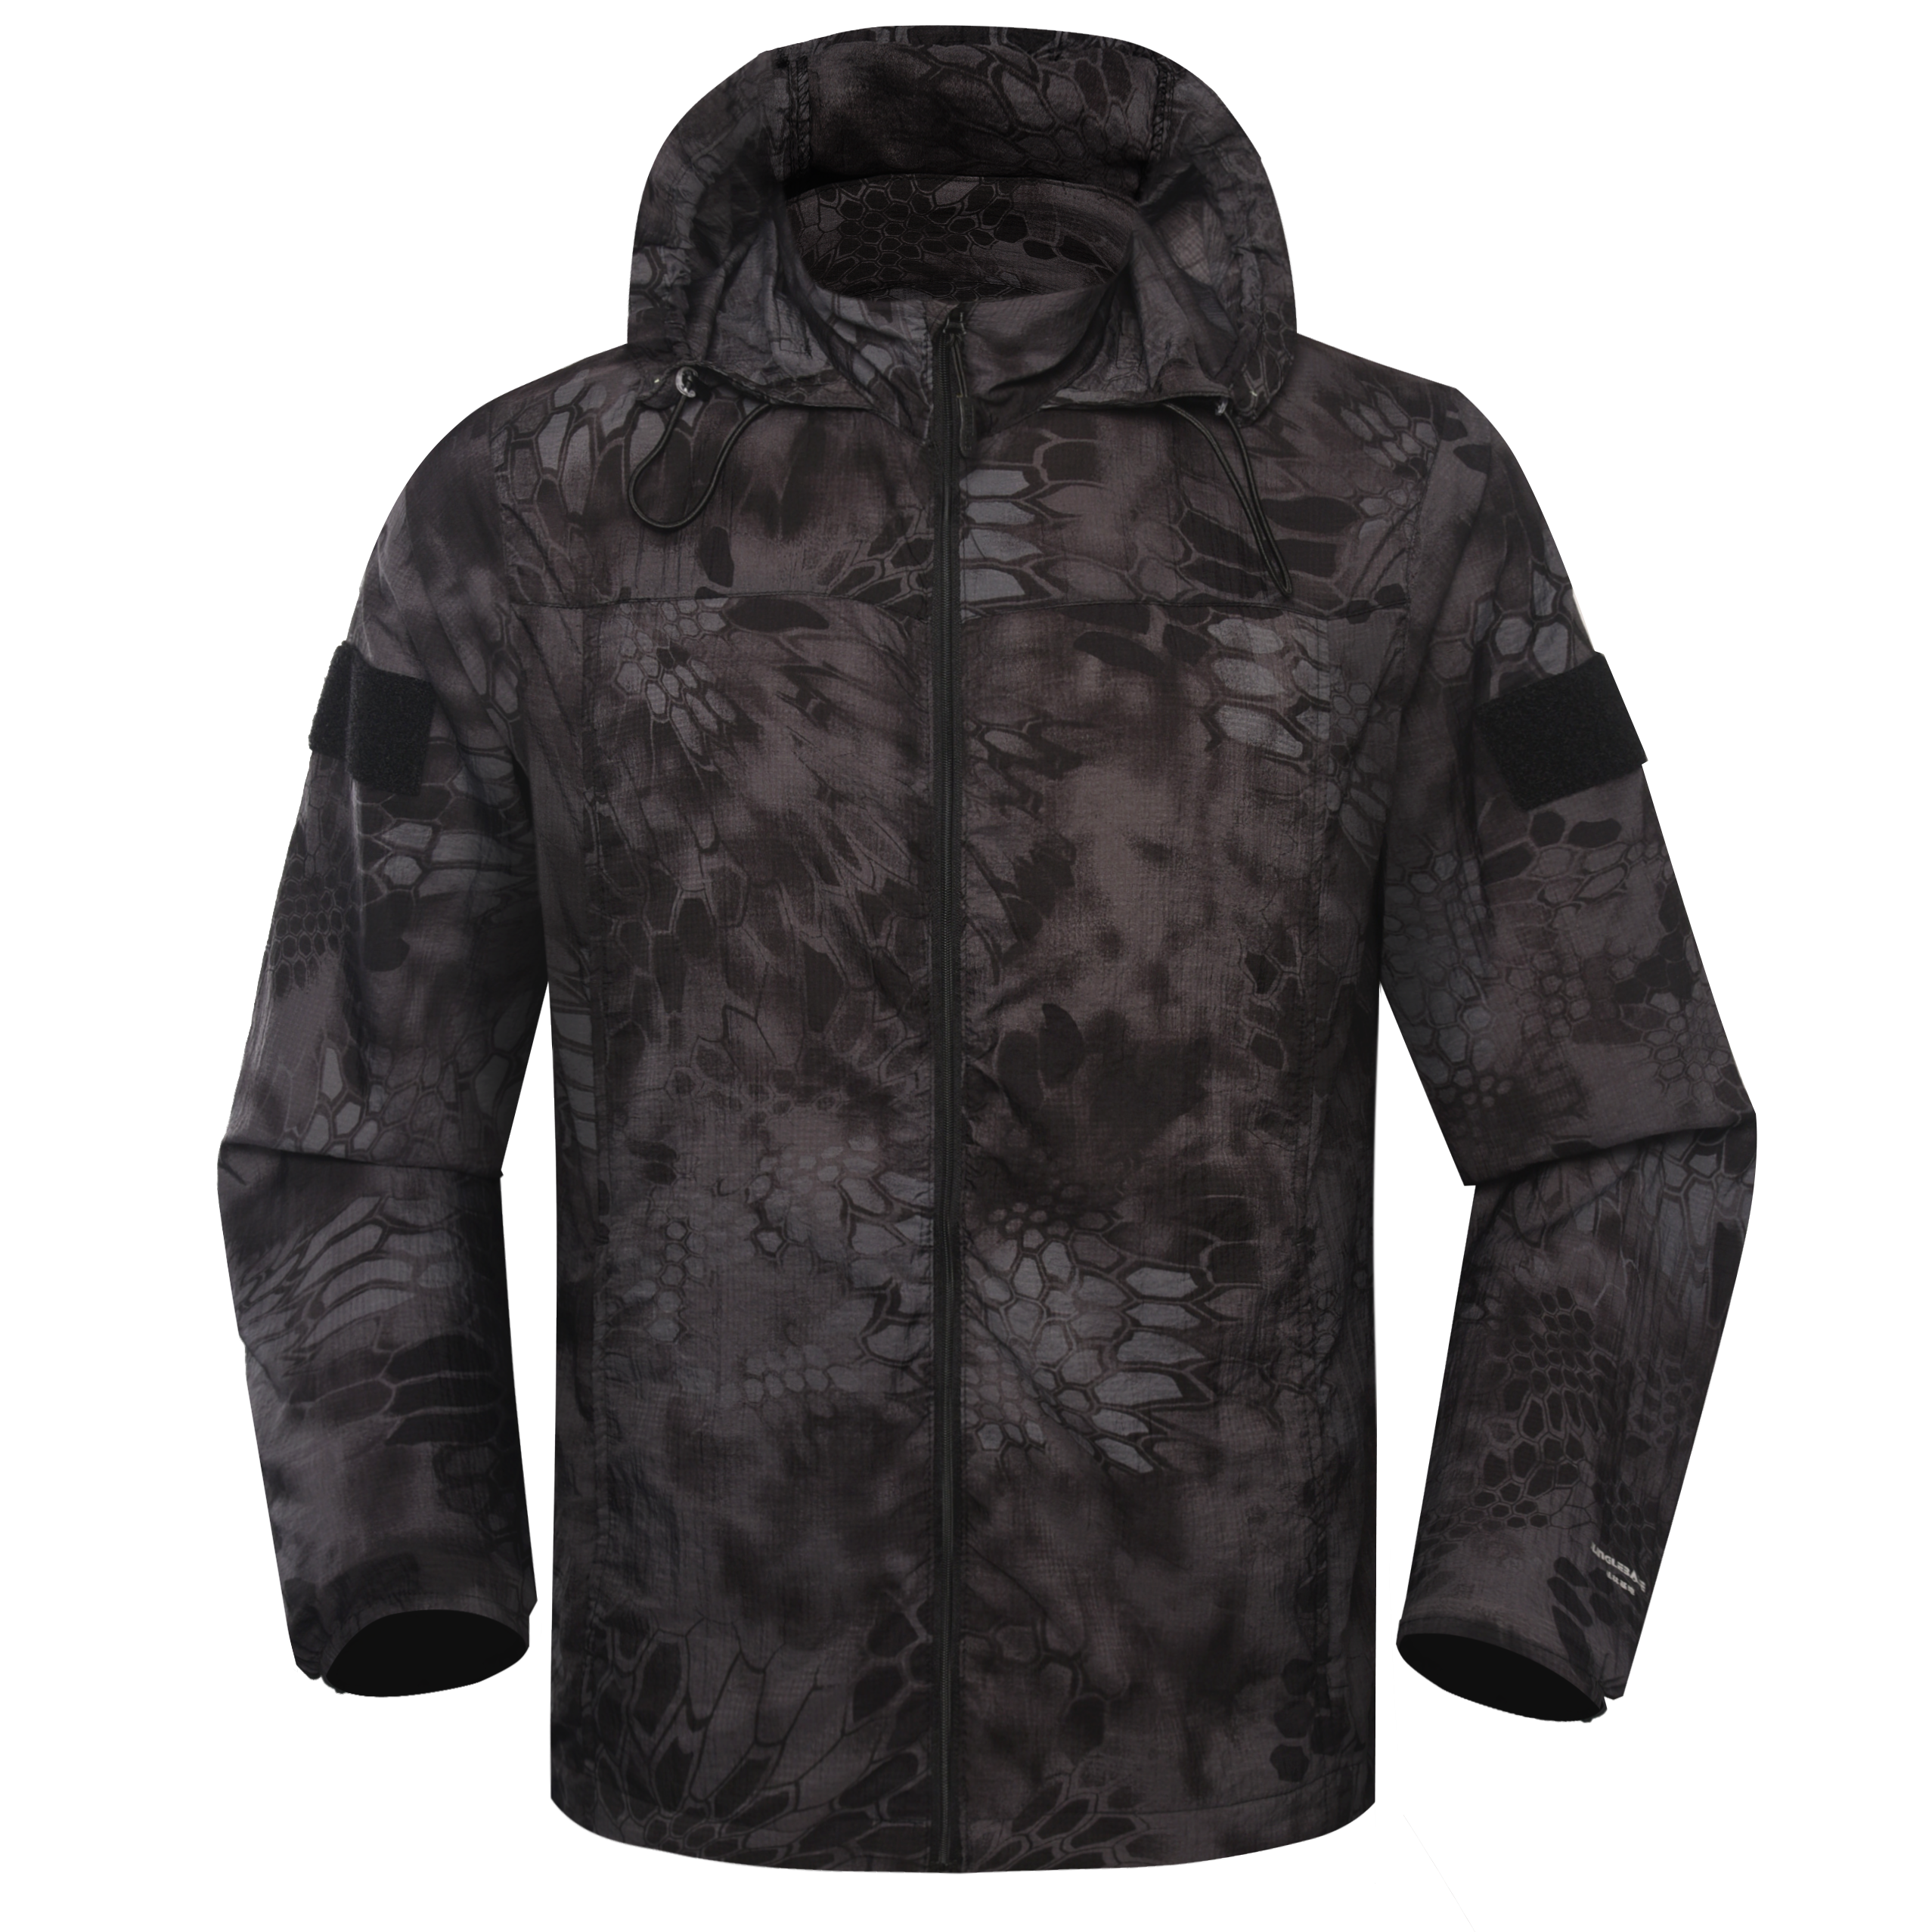 Camouflage Black Jacket Military Uniform